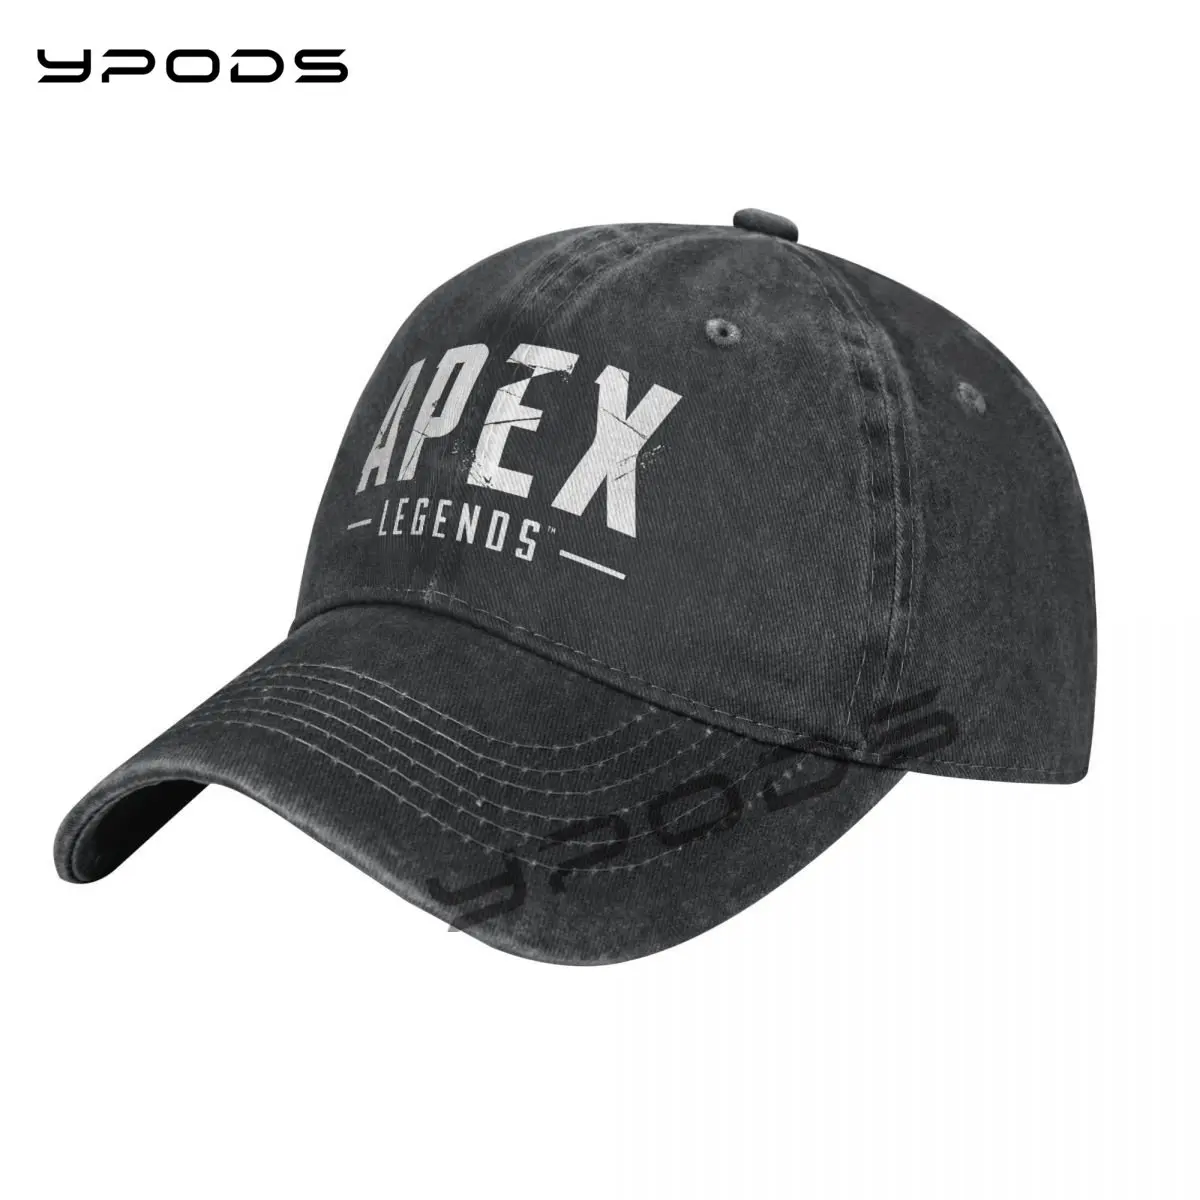 

Apex Legends Vintage Baseball Cap Washable Cotton Adjustable Cap Hats For Men